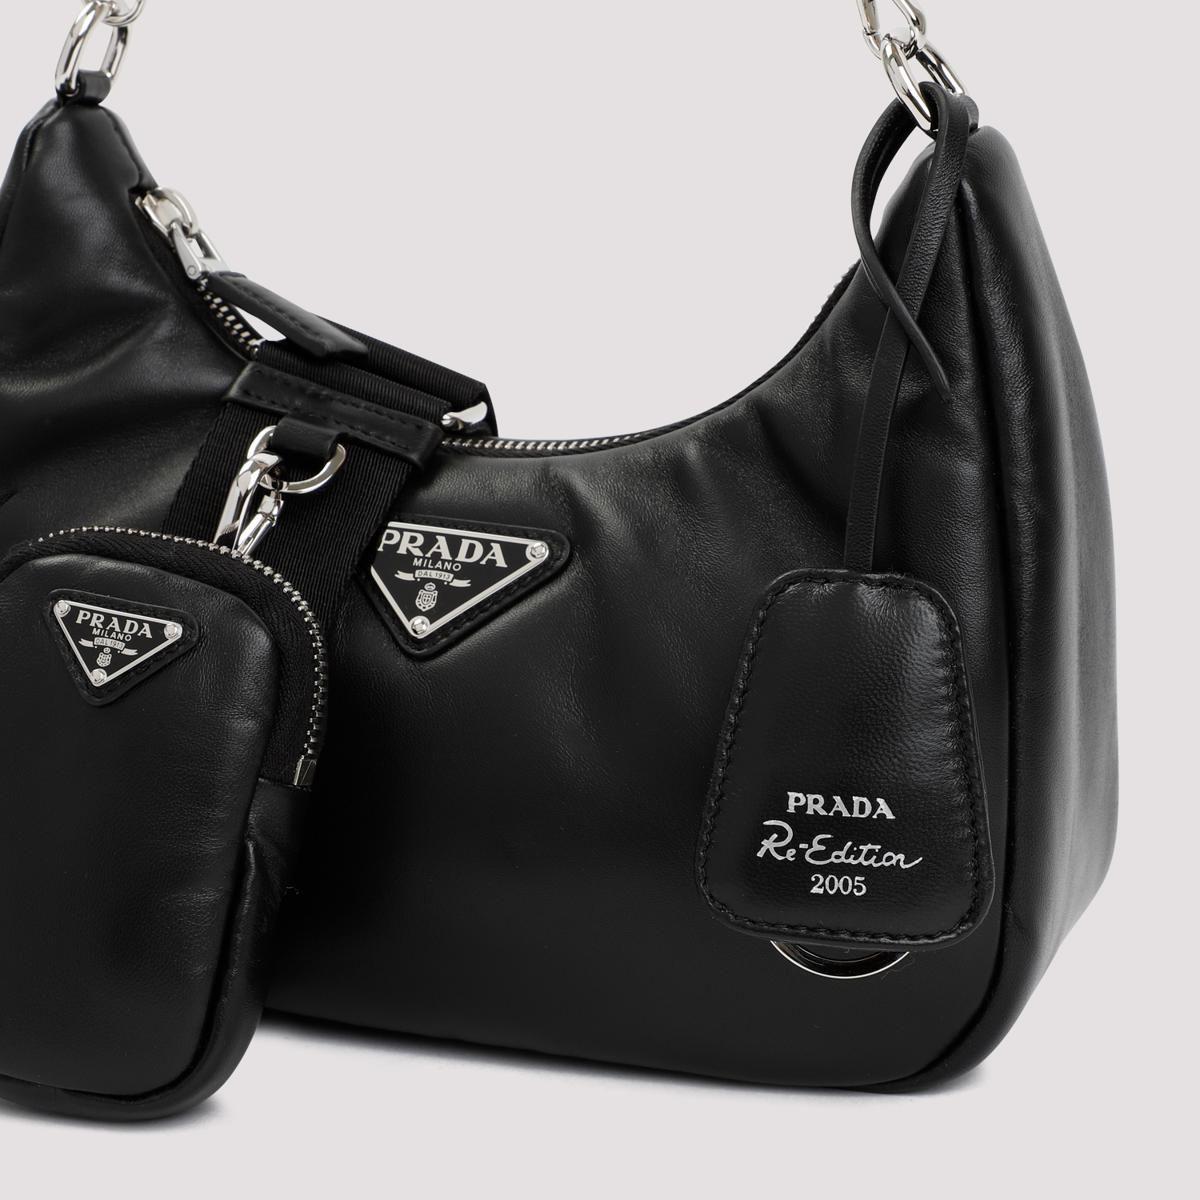 Review of Prada Re-Edition 2005 Bag